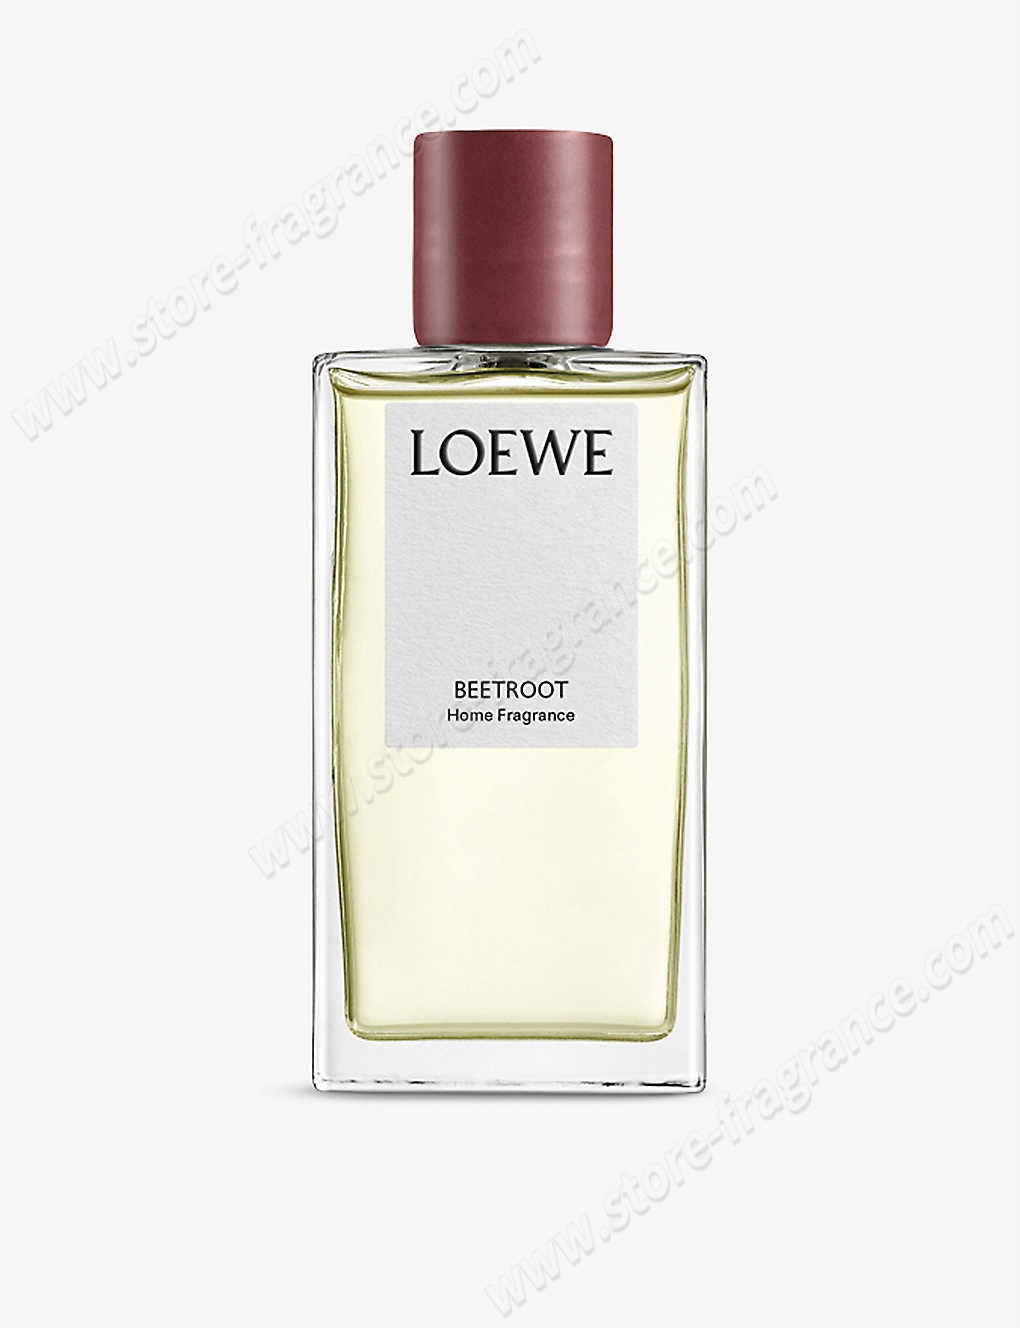 LOEWE/Beetroot home fragrance 150ml ✿ Discount Store - LOEWE/Beetroot home fragrance 150ml ✿ Discount Store